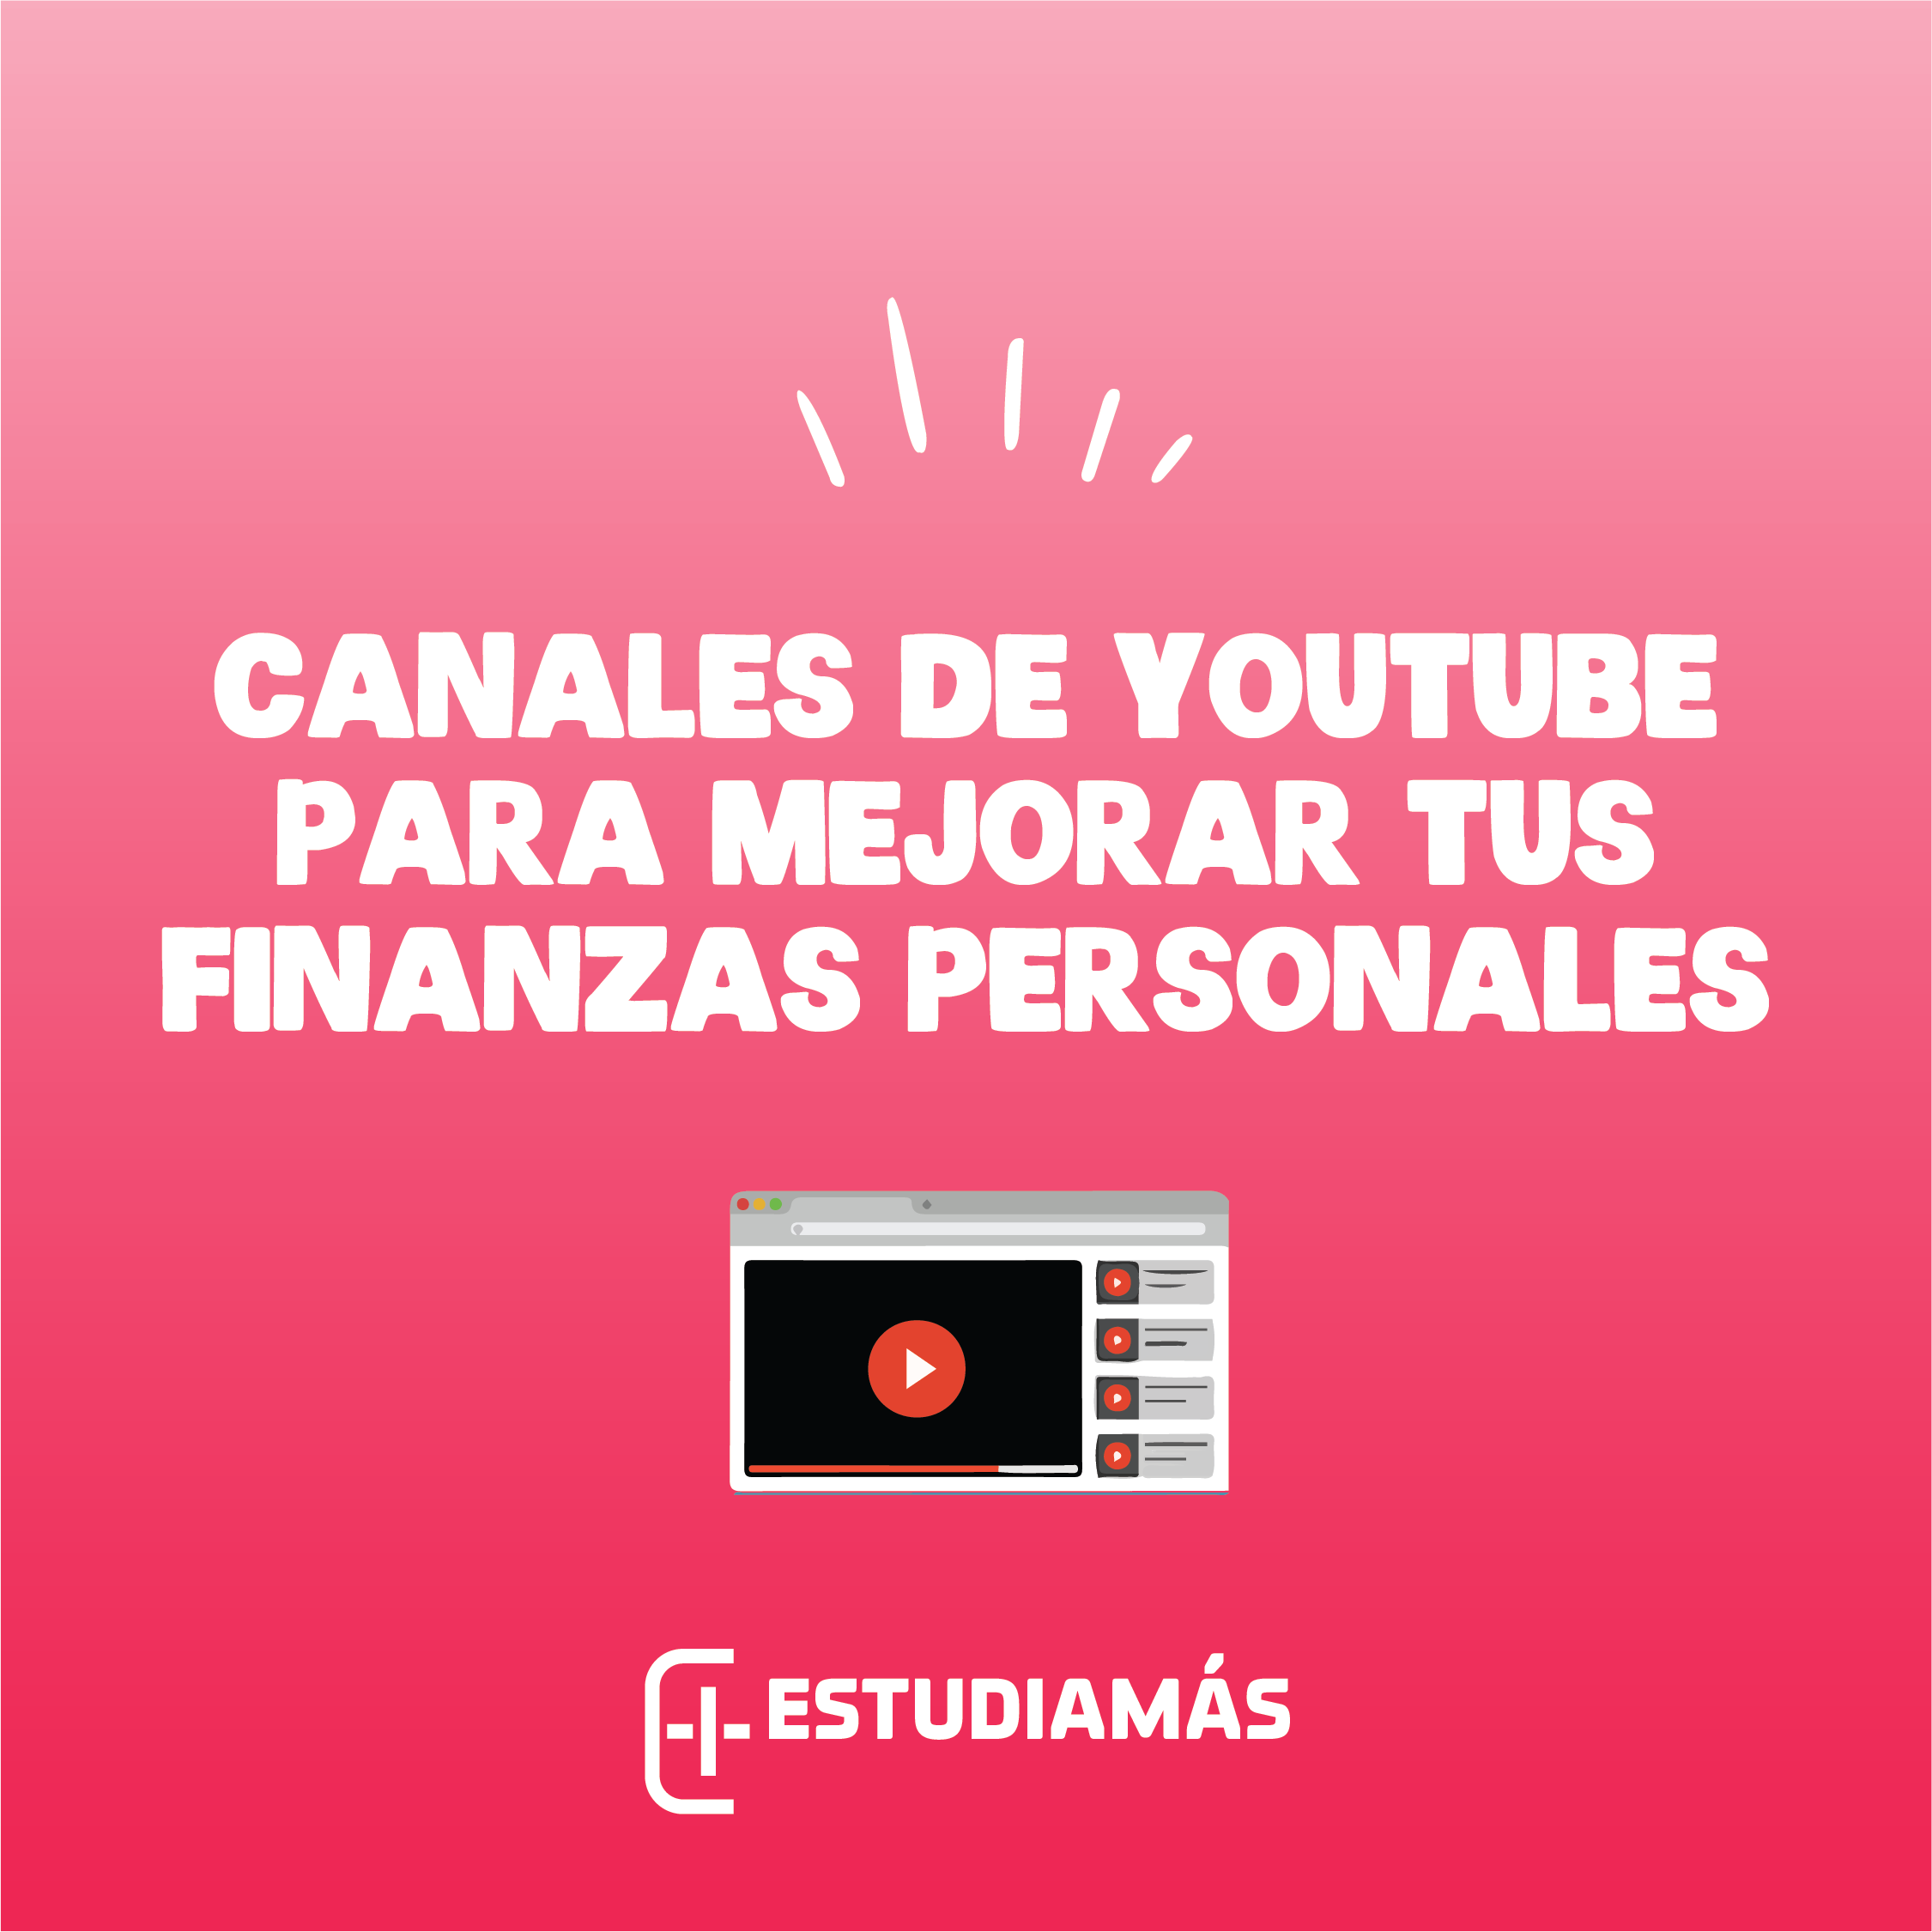 Canales de YouTube sobre finanzas personales